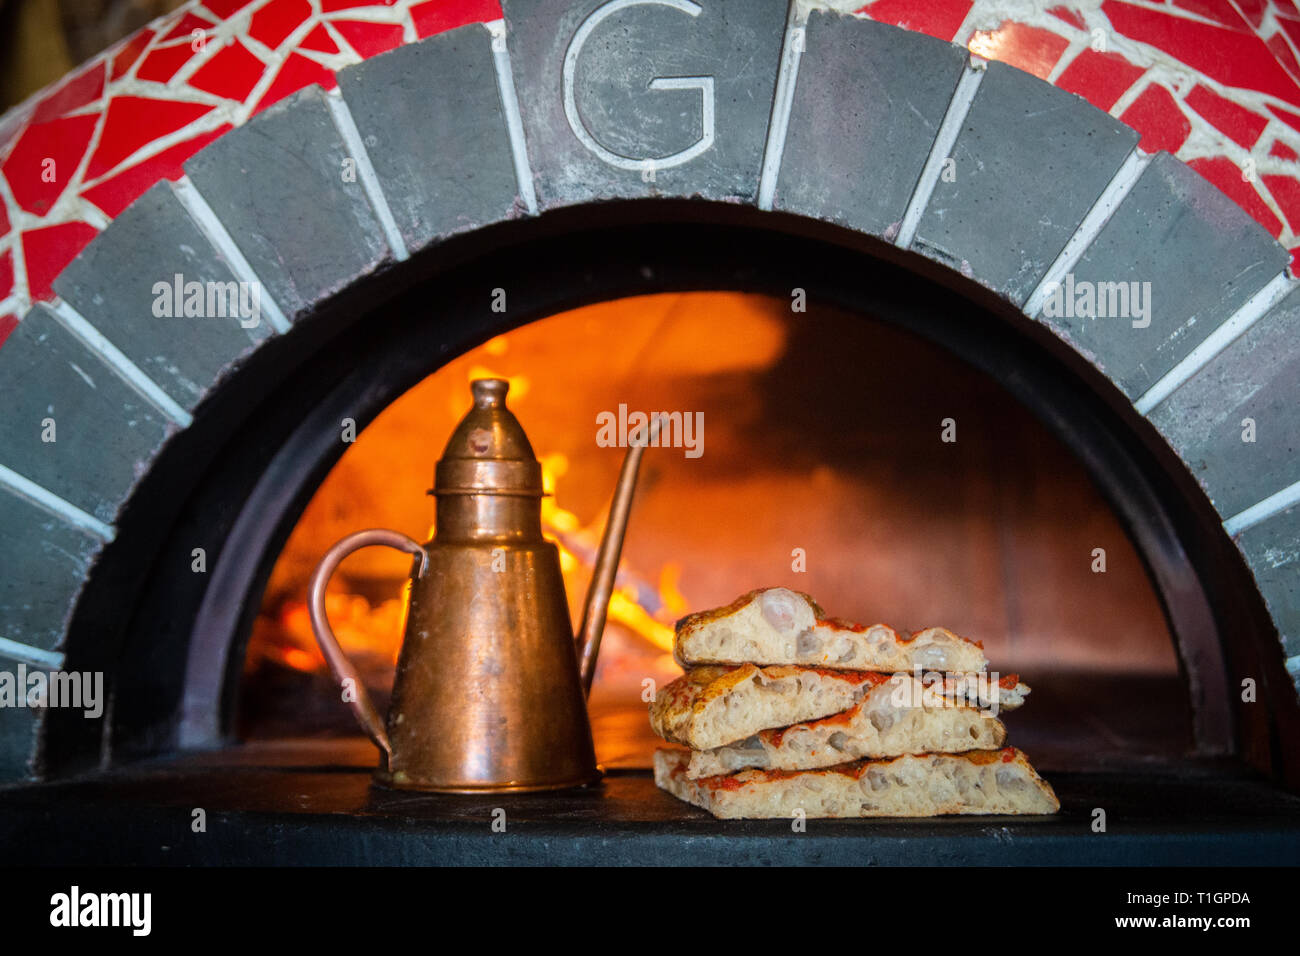 Tranches de pizza traditionnelle romaine dans la bouche d'un four à bois dans une trattoria, pizzeria avec la bouteille d'huile d'olive en laiton Banque D'Images